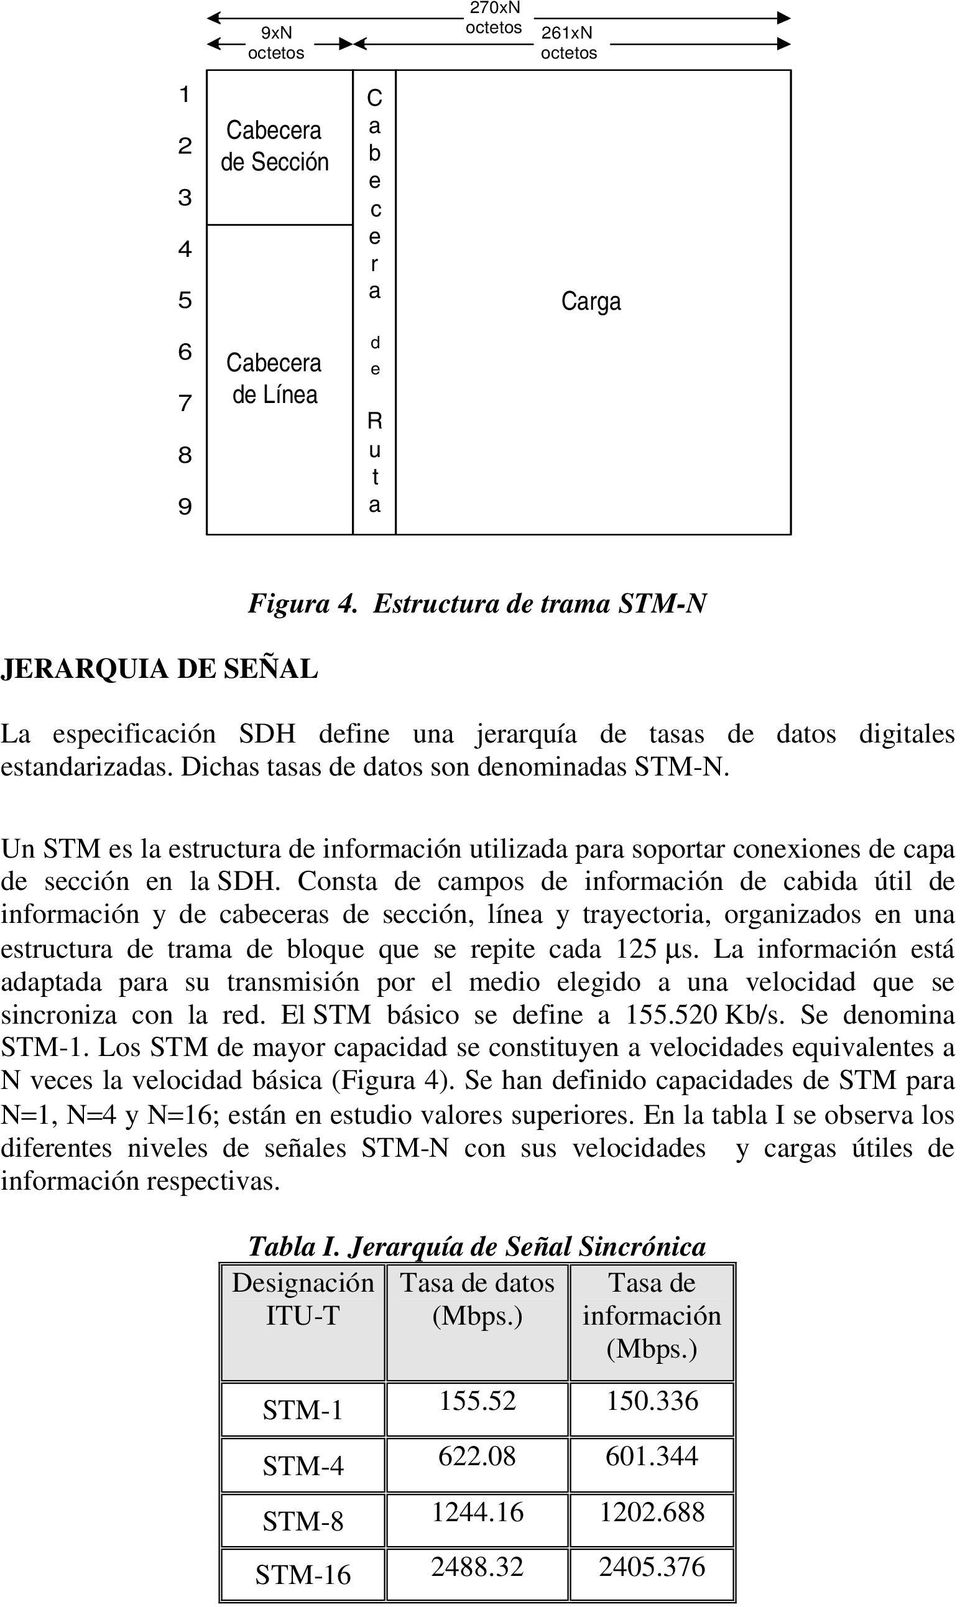 Un STM es la estructura de información utilizada para soportar conexiones de capa de sección en la SDH.